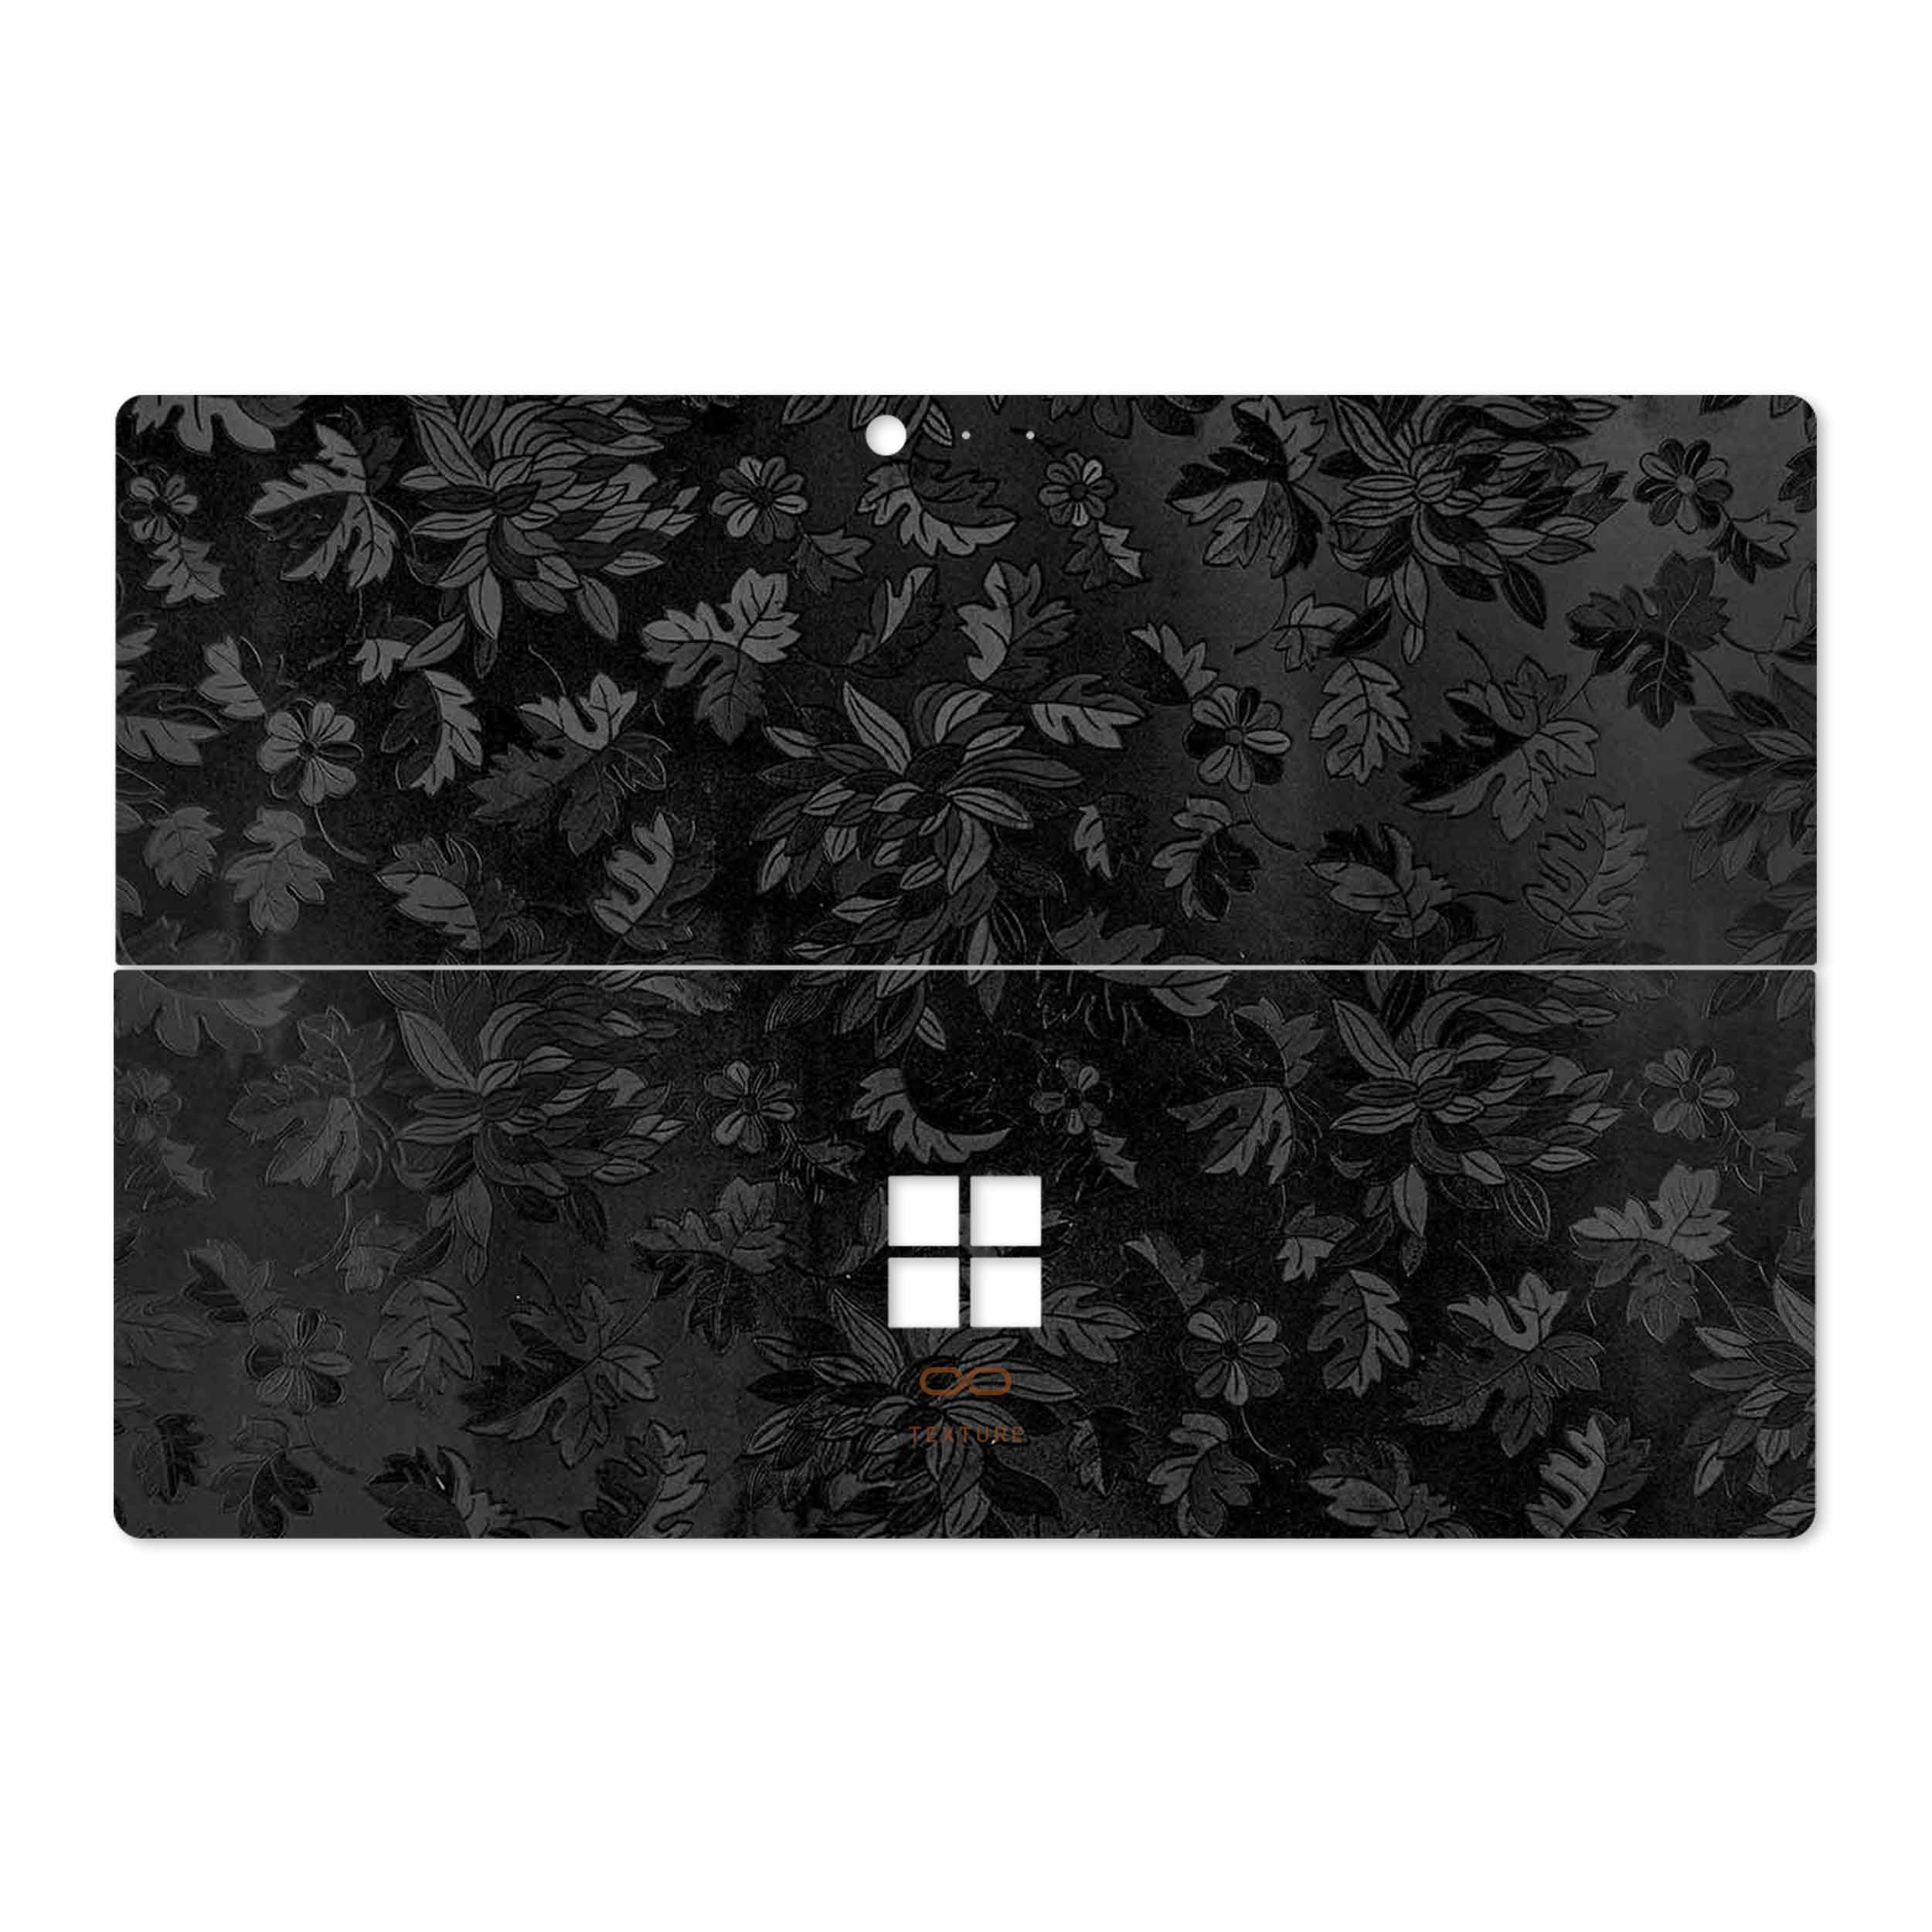 برچسب پوششی ماهوت مدل Black-Wildflower مناسب برای تبلت مایکروسافت Surface Pro 4 2015